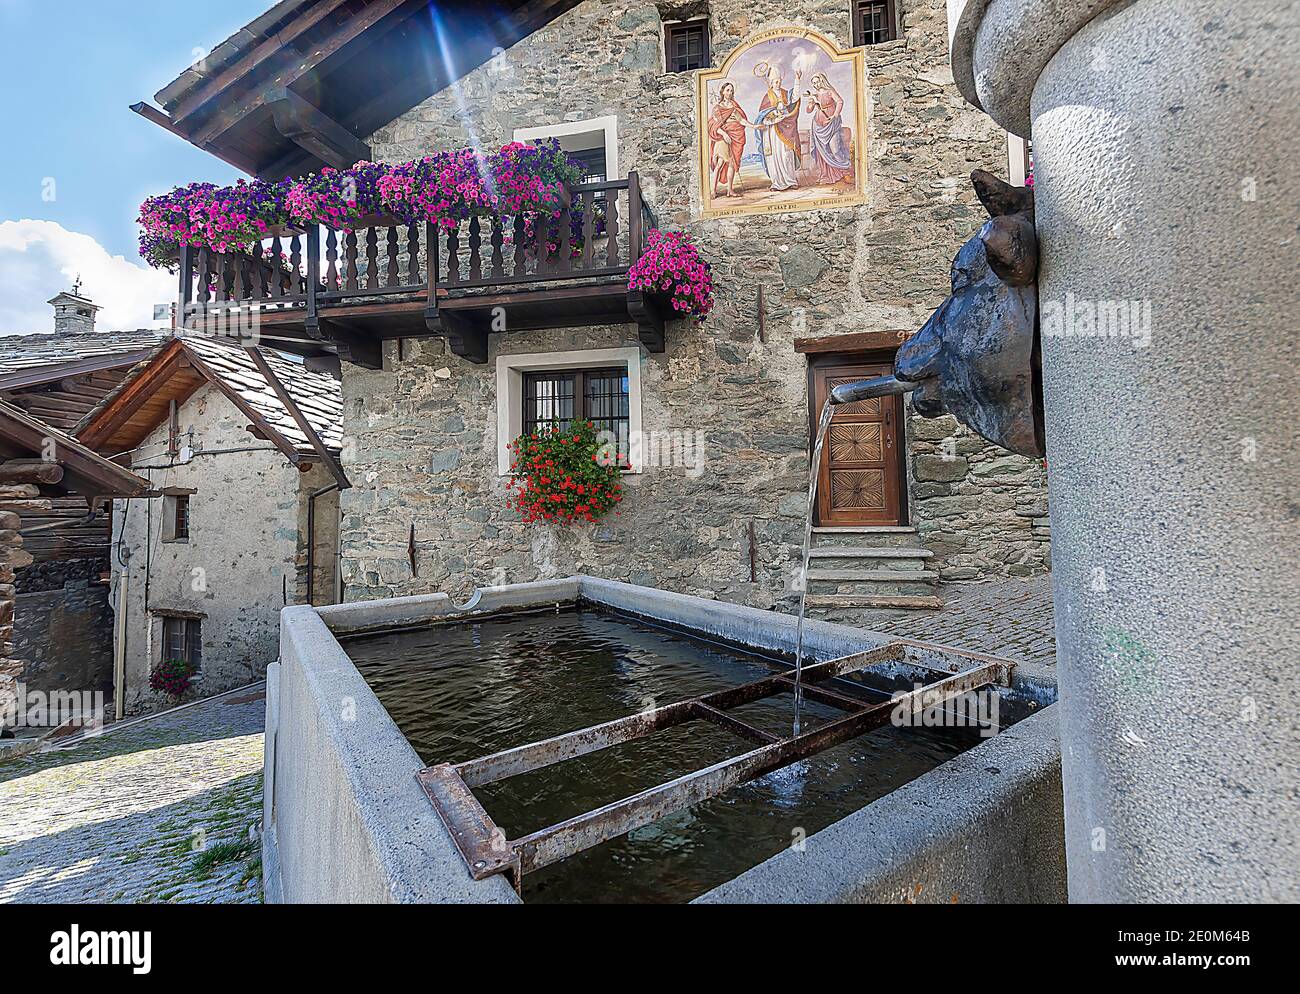 Fontaine et maisons typiques en bois et en pierre, Antagnod, Vallée d'Aoste, Italie Banque D'Images